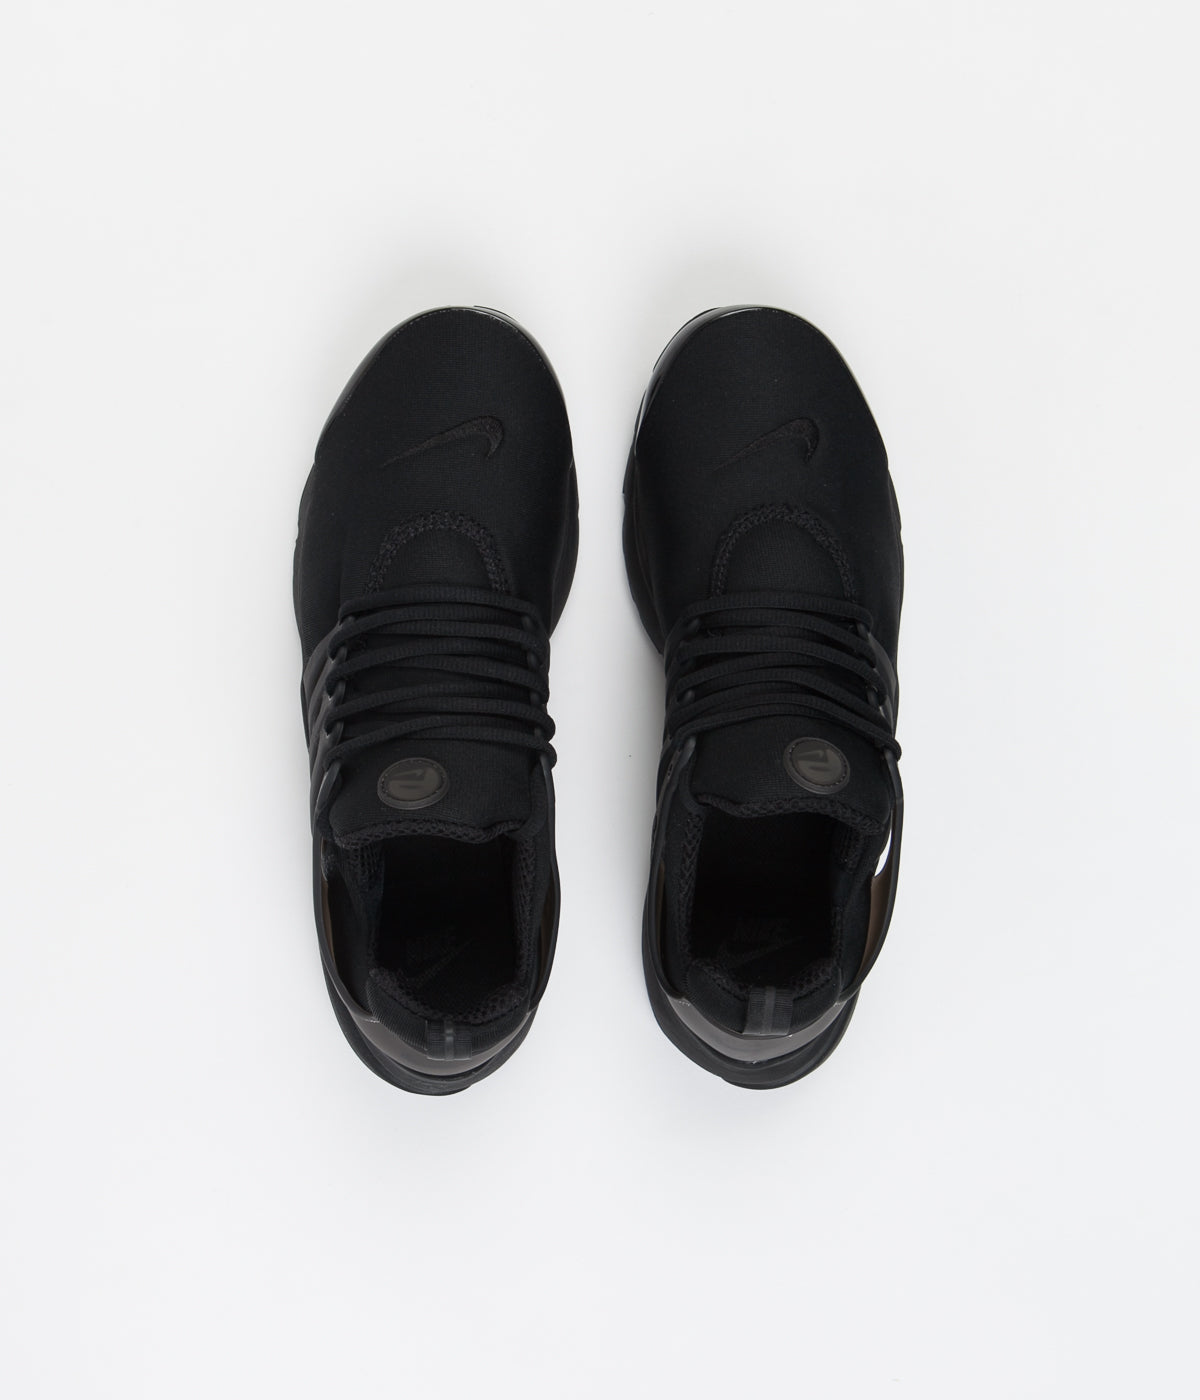 Confundir Nuez Desarmado Nike Air Presto Shoes - Black / Black - Black | Always in Colour